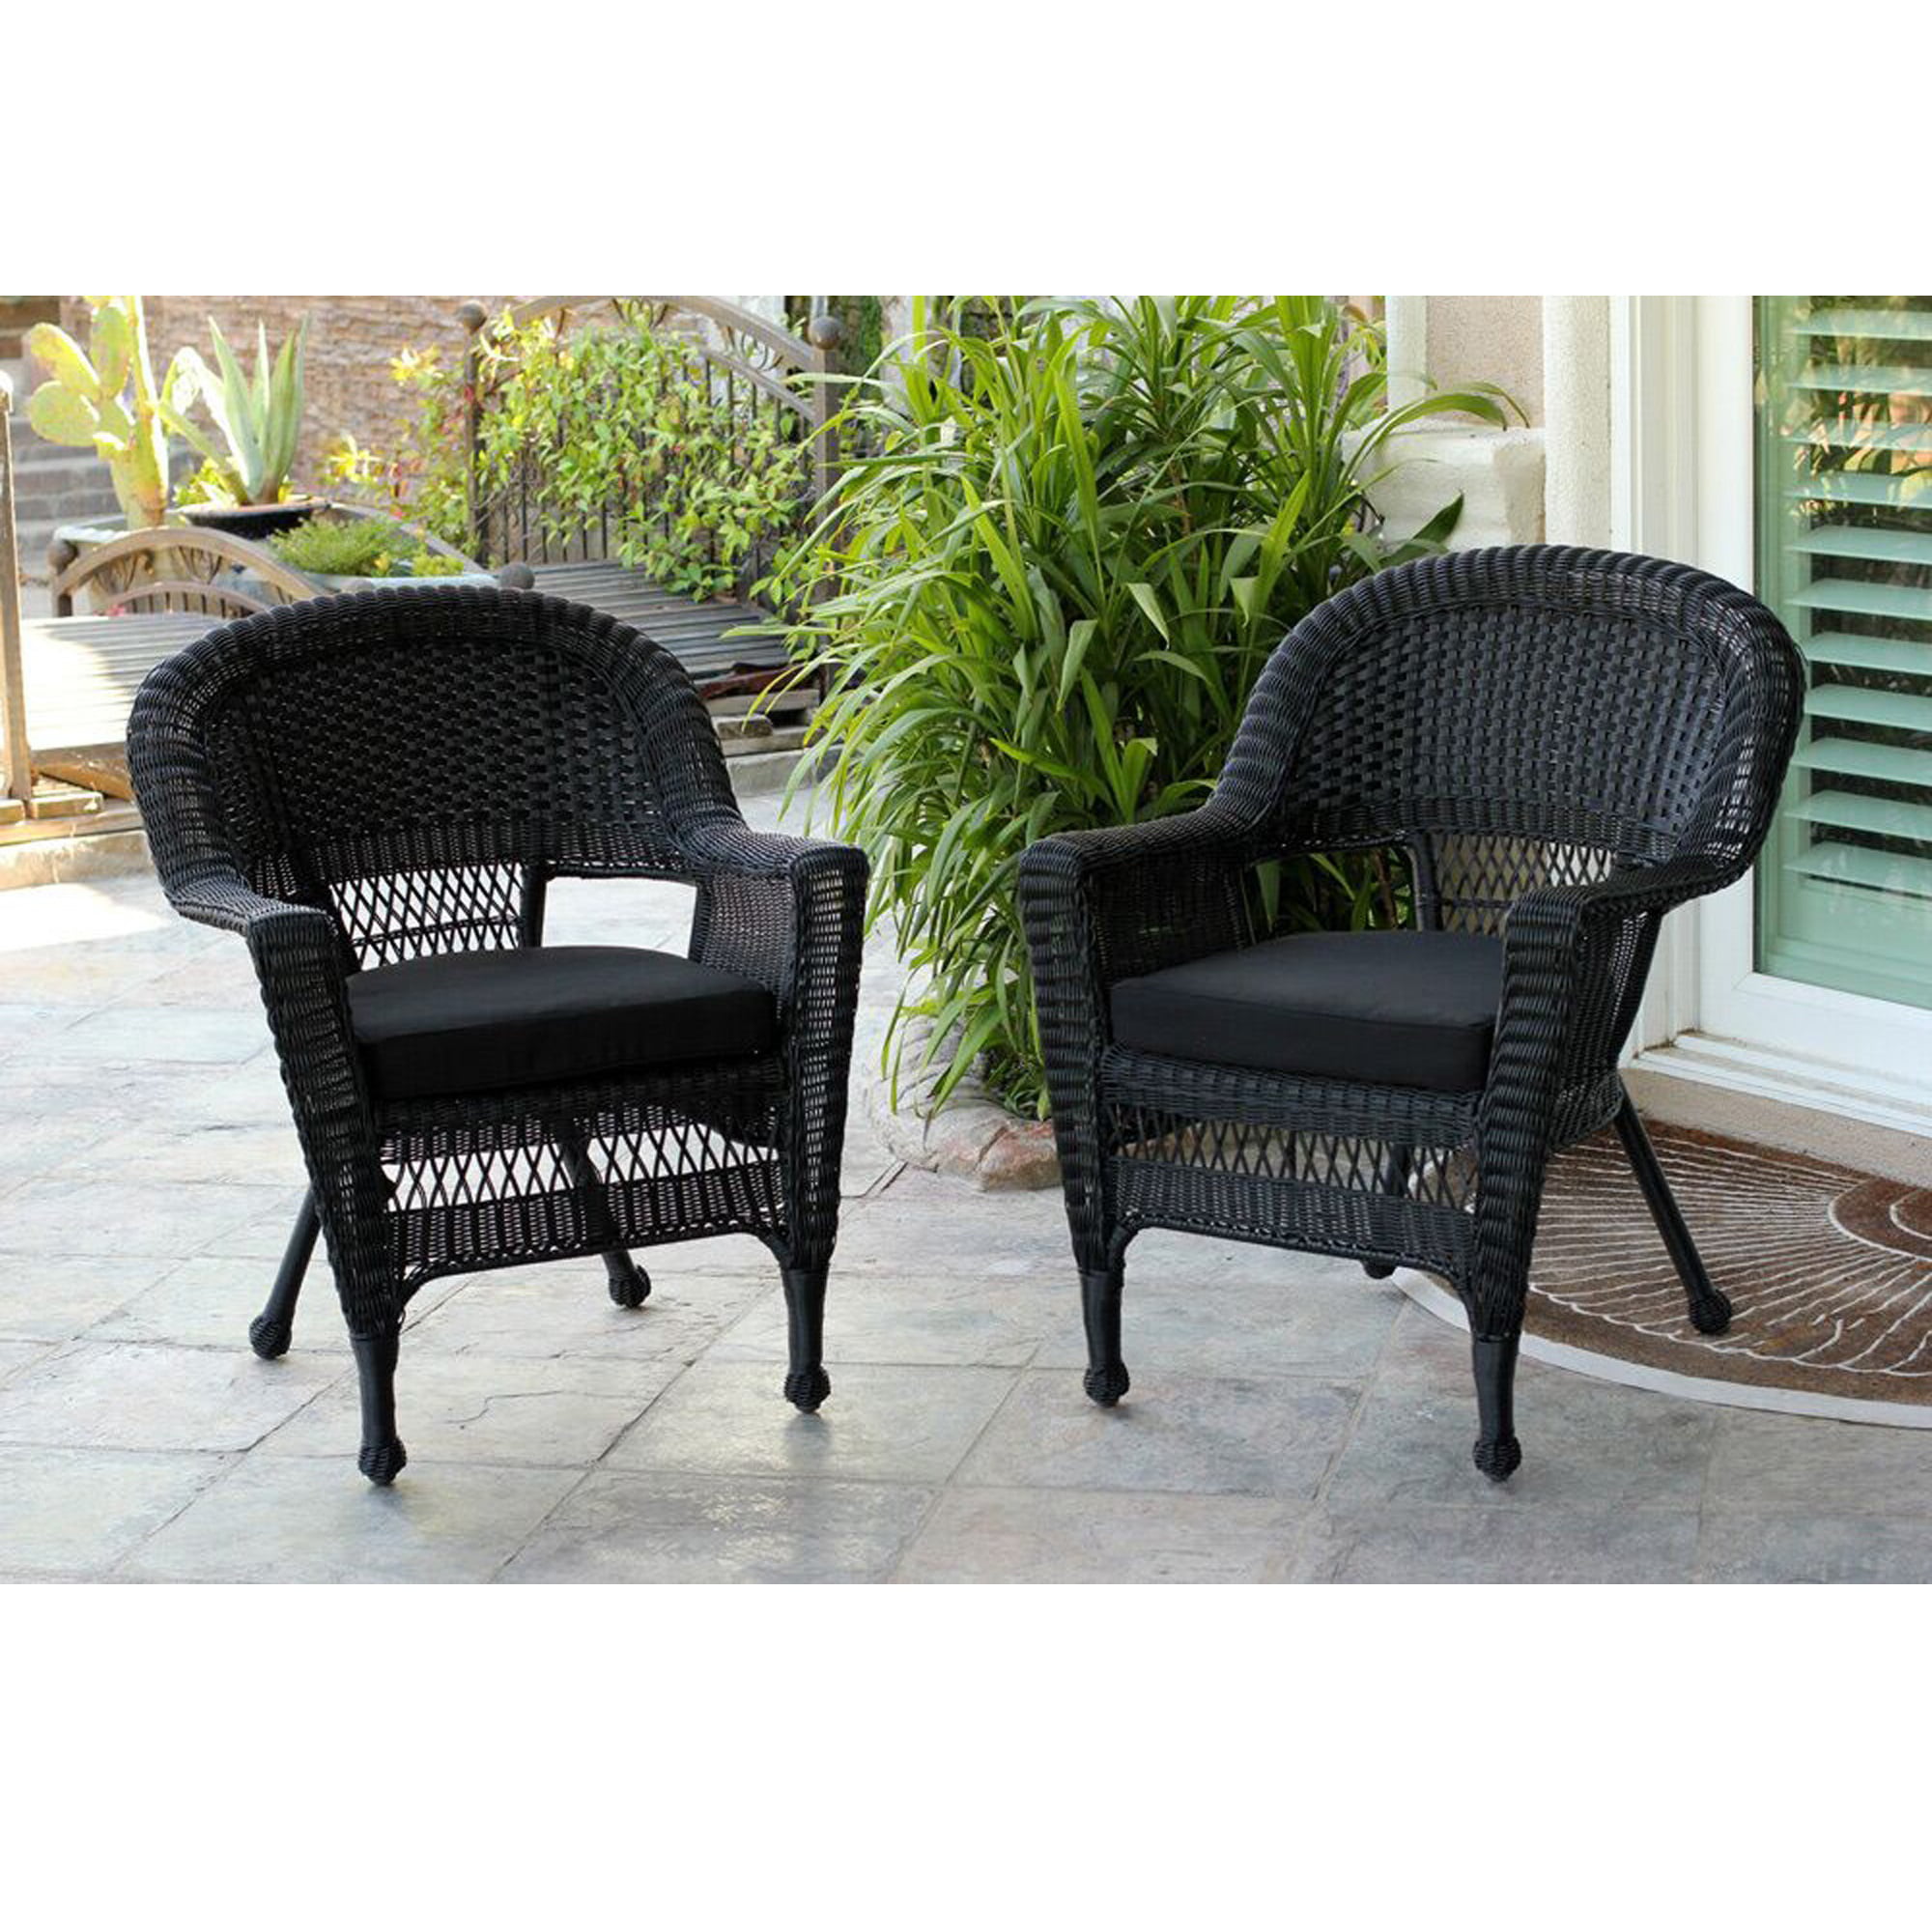 Set of 2 Black Resin Wicker Outdoor Patio Garden Chairs